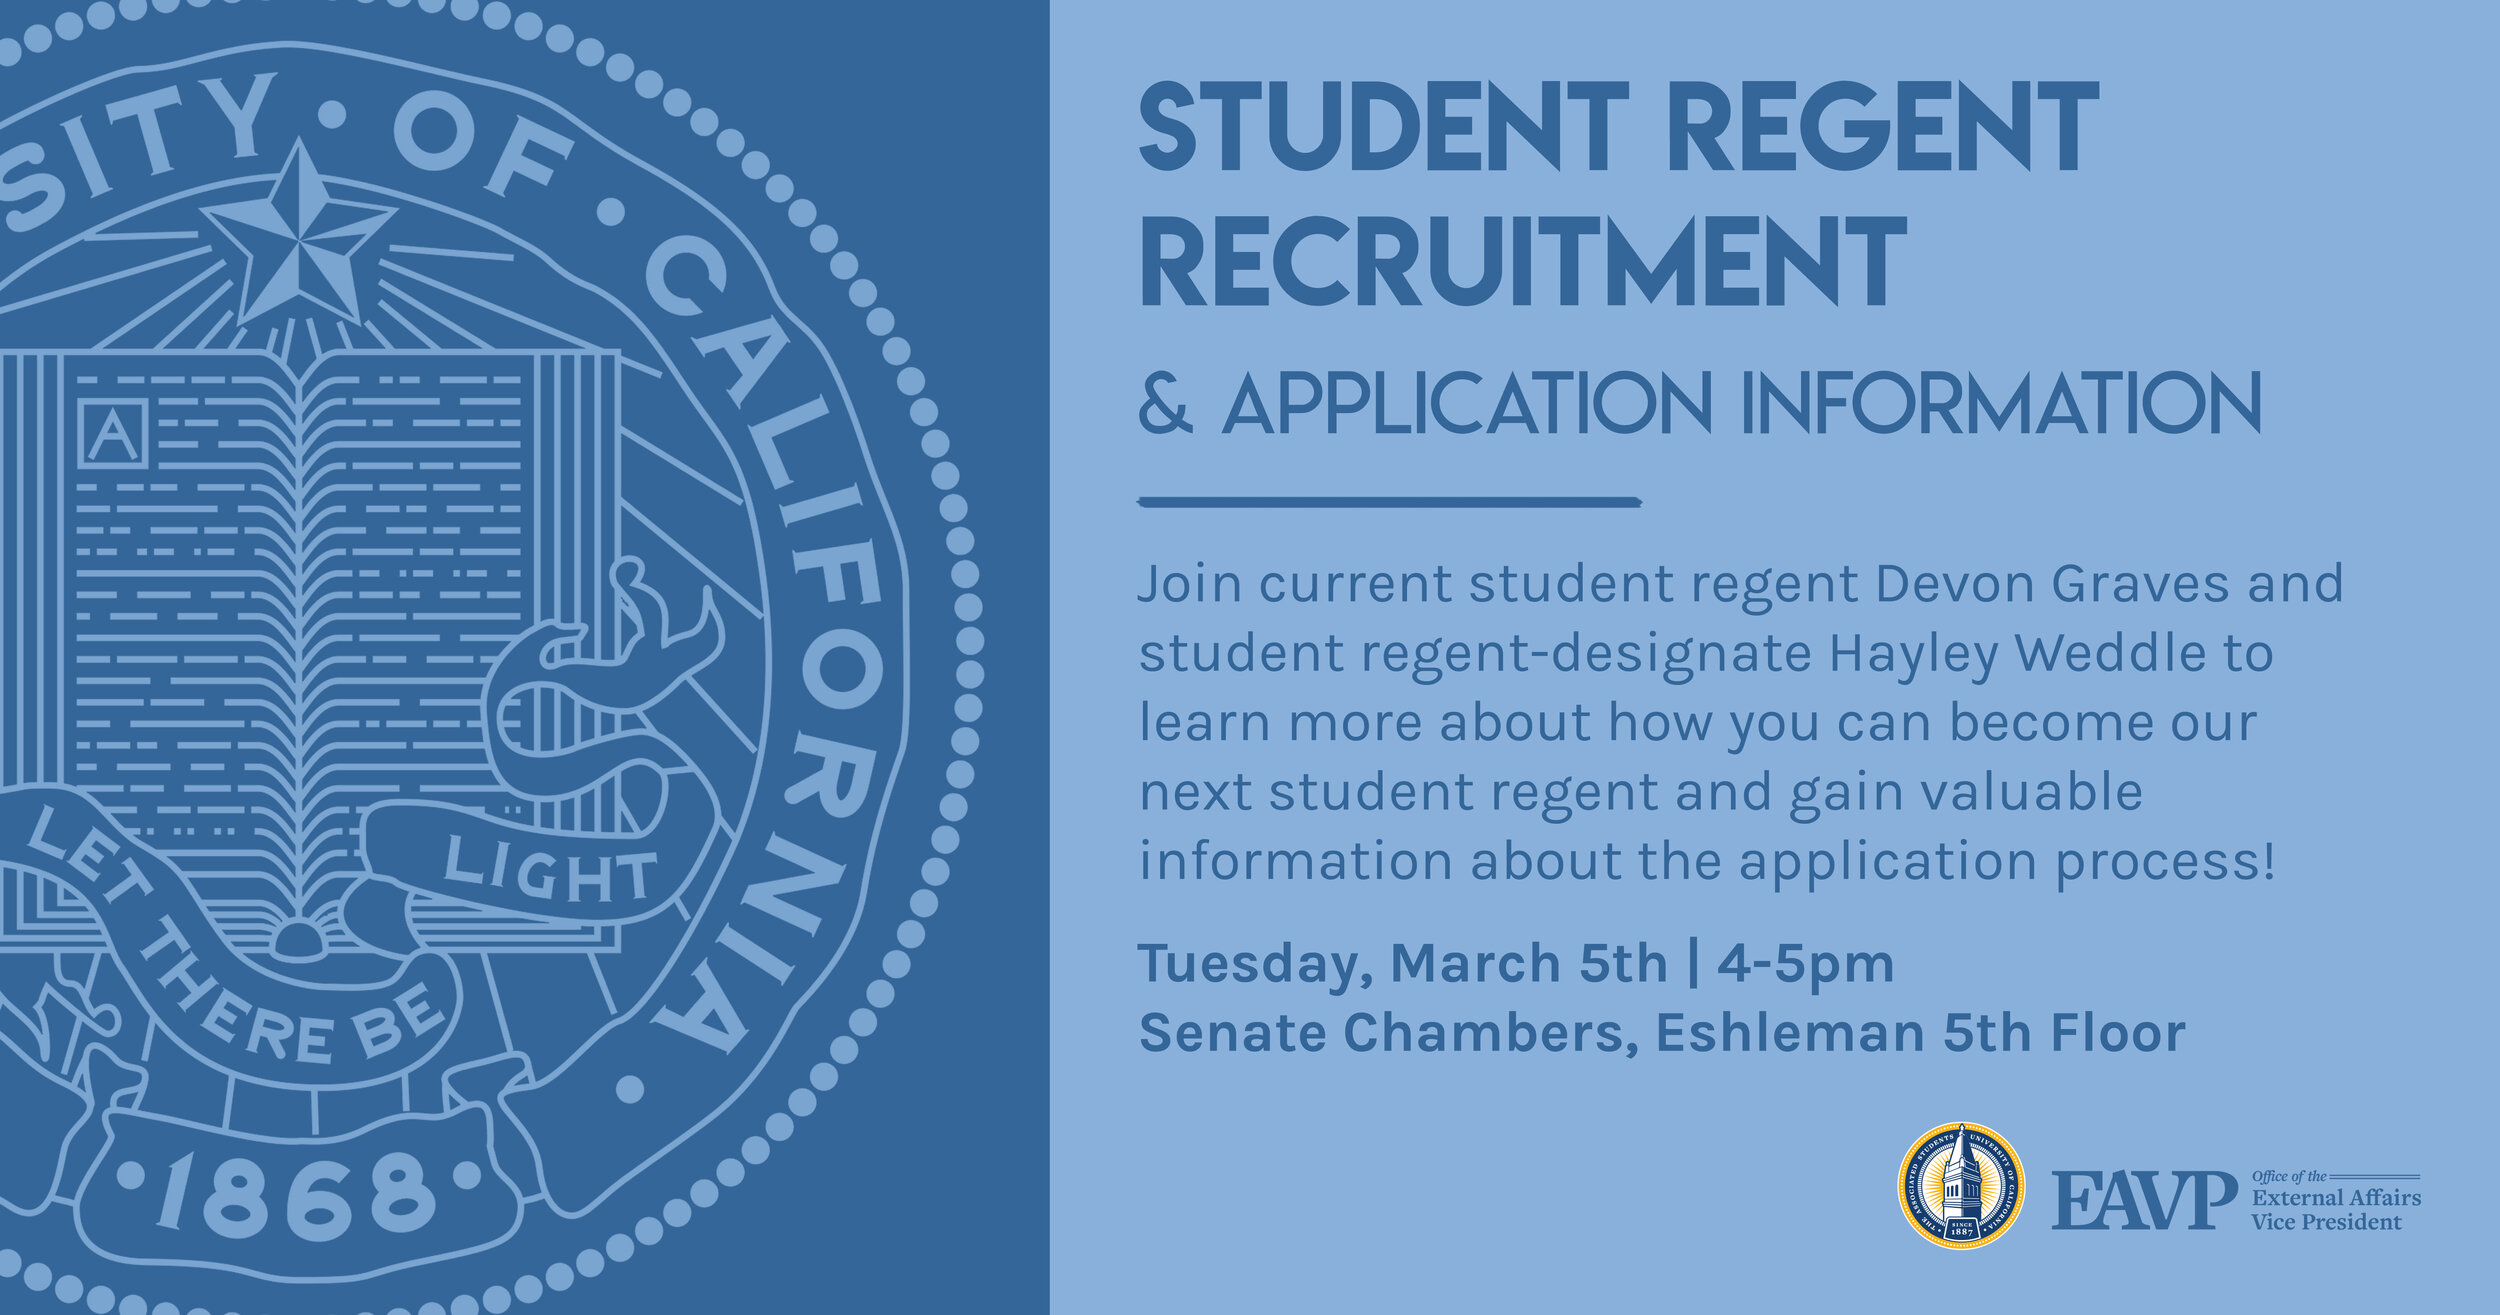 RegentRecruitment_EAVP.jpg